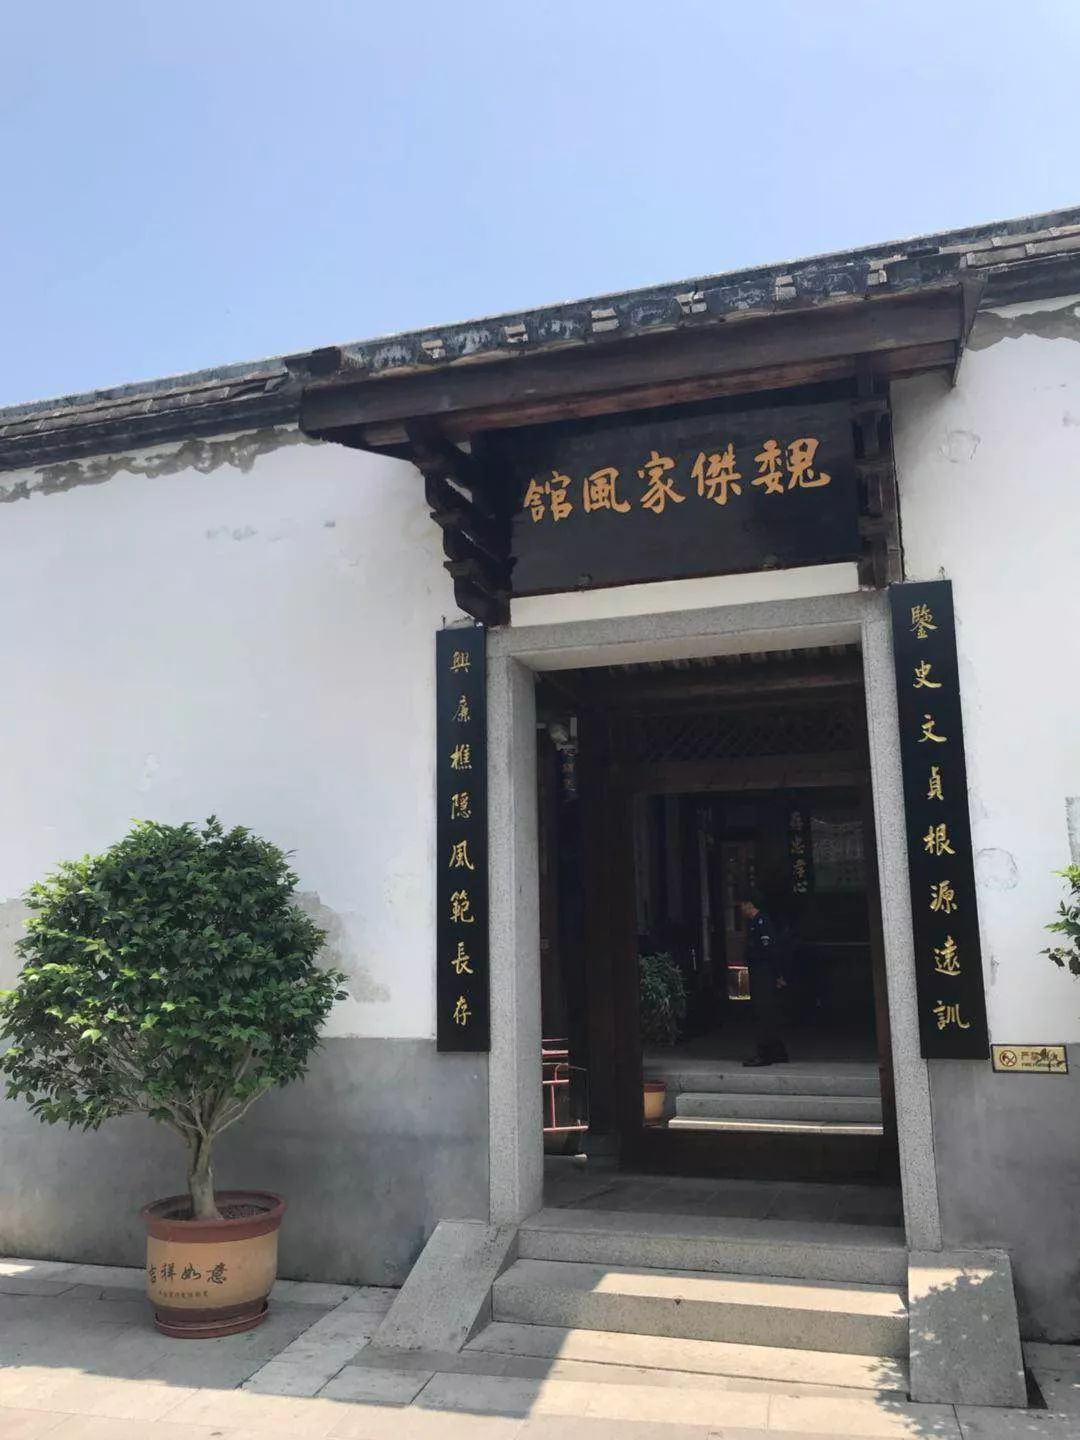 馆坐落于福州市晋安区金鸡山公园,掩映在一片梅林与竹园之间,白墙青瓦